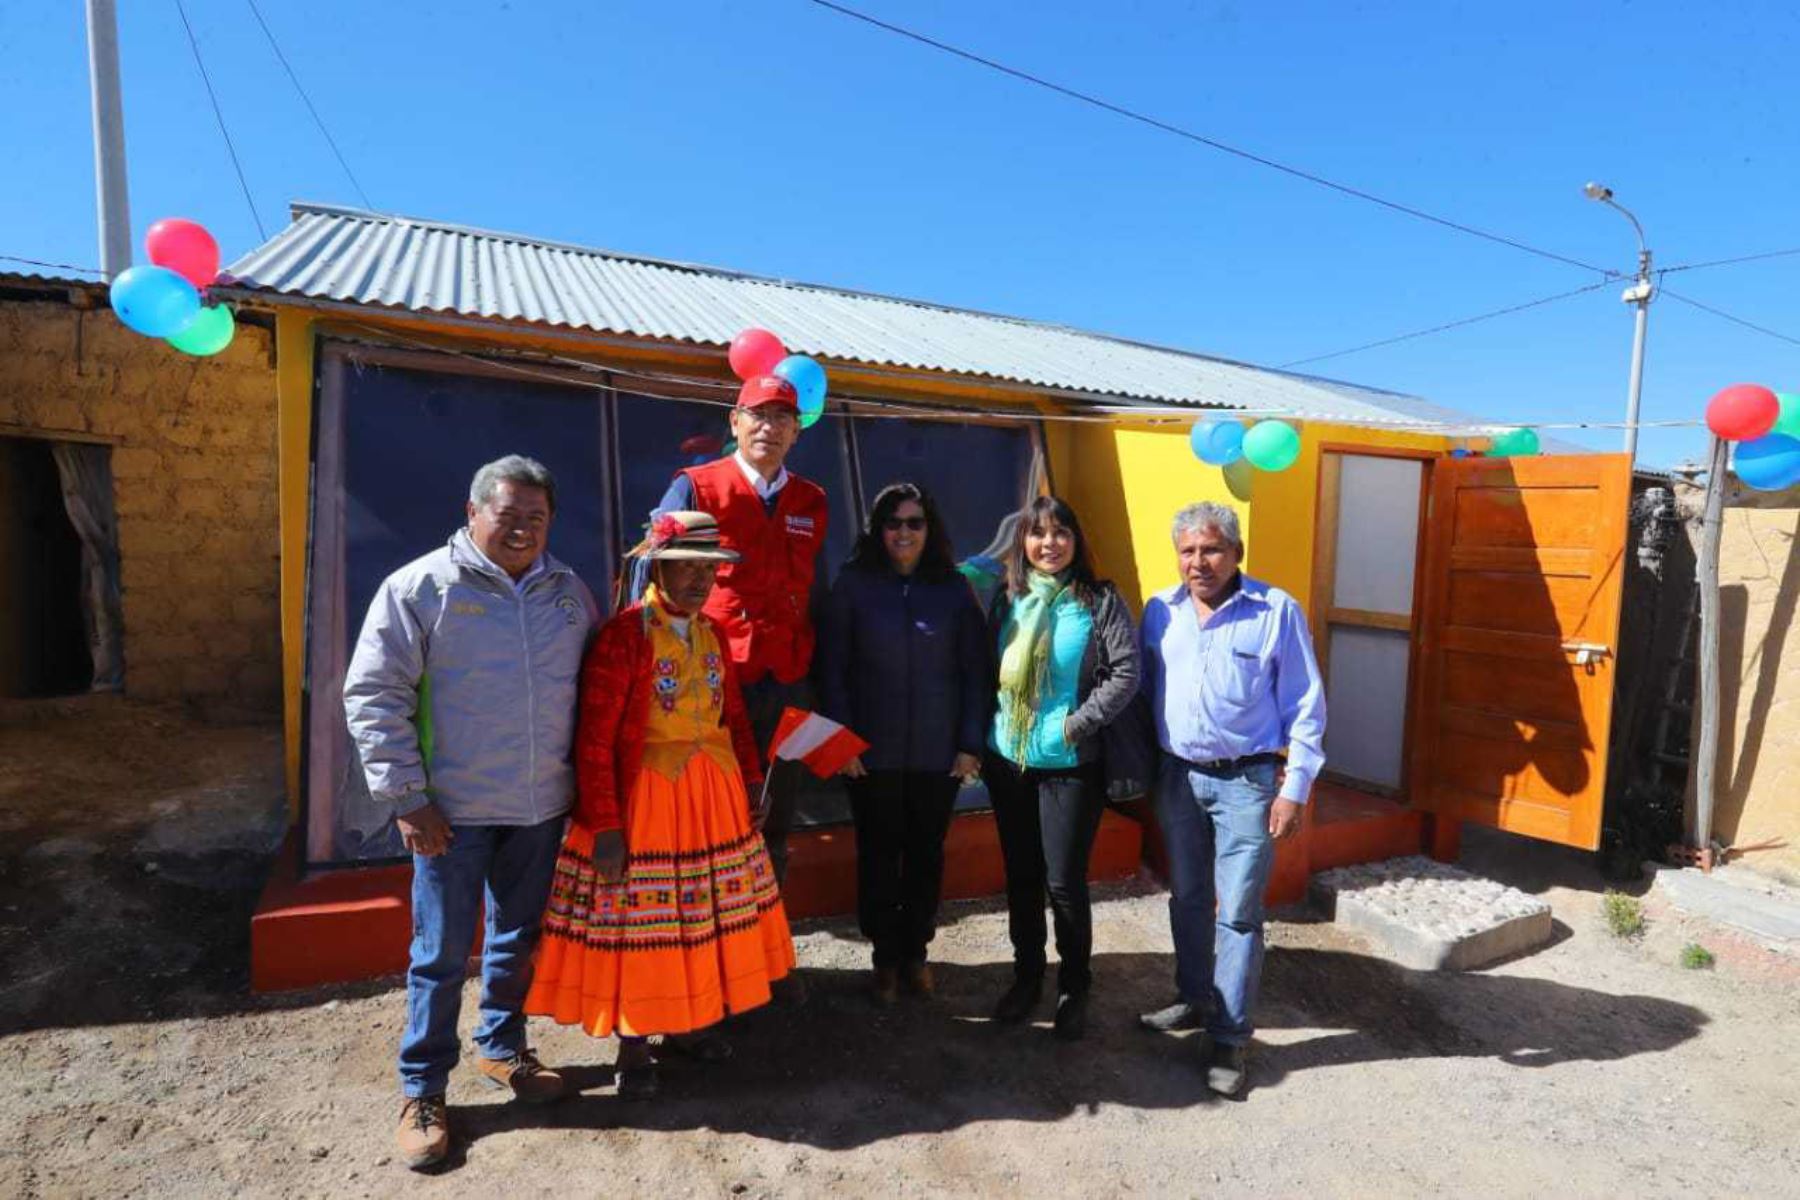 El ministerio de Desarrollo e Inclusión Social (Midis) implementará 977 viviendas térmicas en zonas rurales de 14 distritos de las provincias de Yungay (Áncash); Víctor Fajardo, Huancasancos, Cangallo, Parinacochas, Lucanas y Páucar del Sara Sara (Ayacucho); Huamalíes (Huánuco); Huancayo y Jauja (Junín); y Oxapampa y Pasco (Pasco).